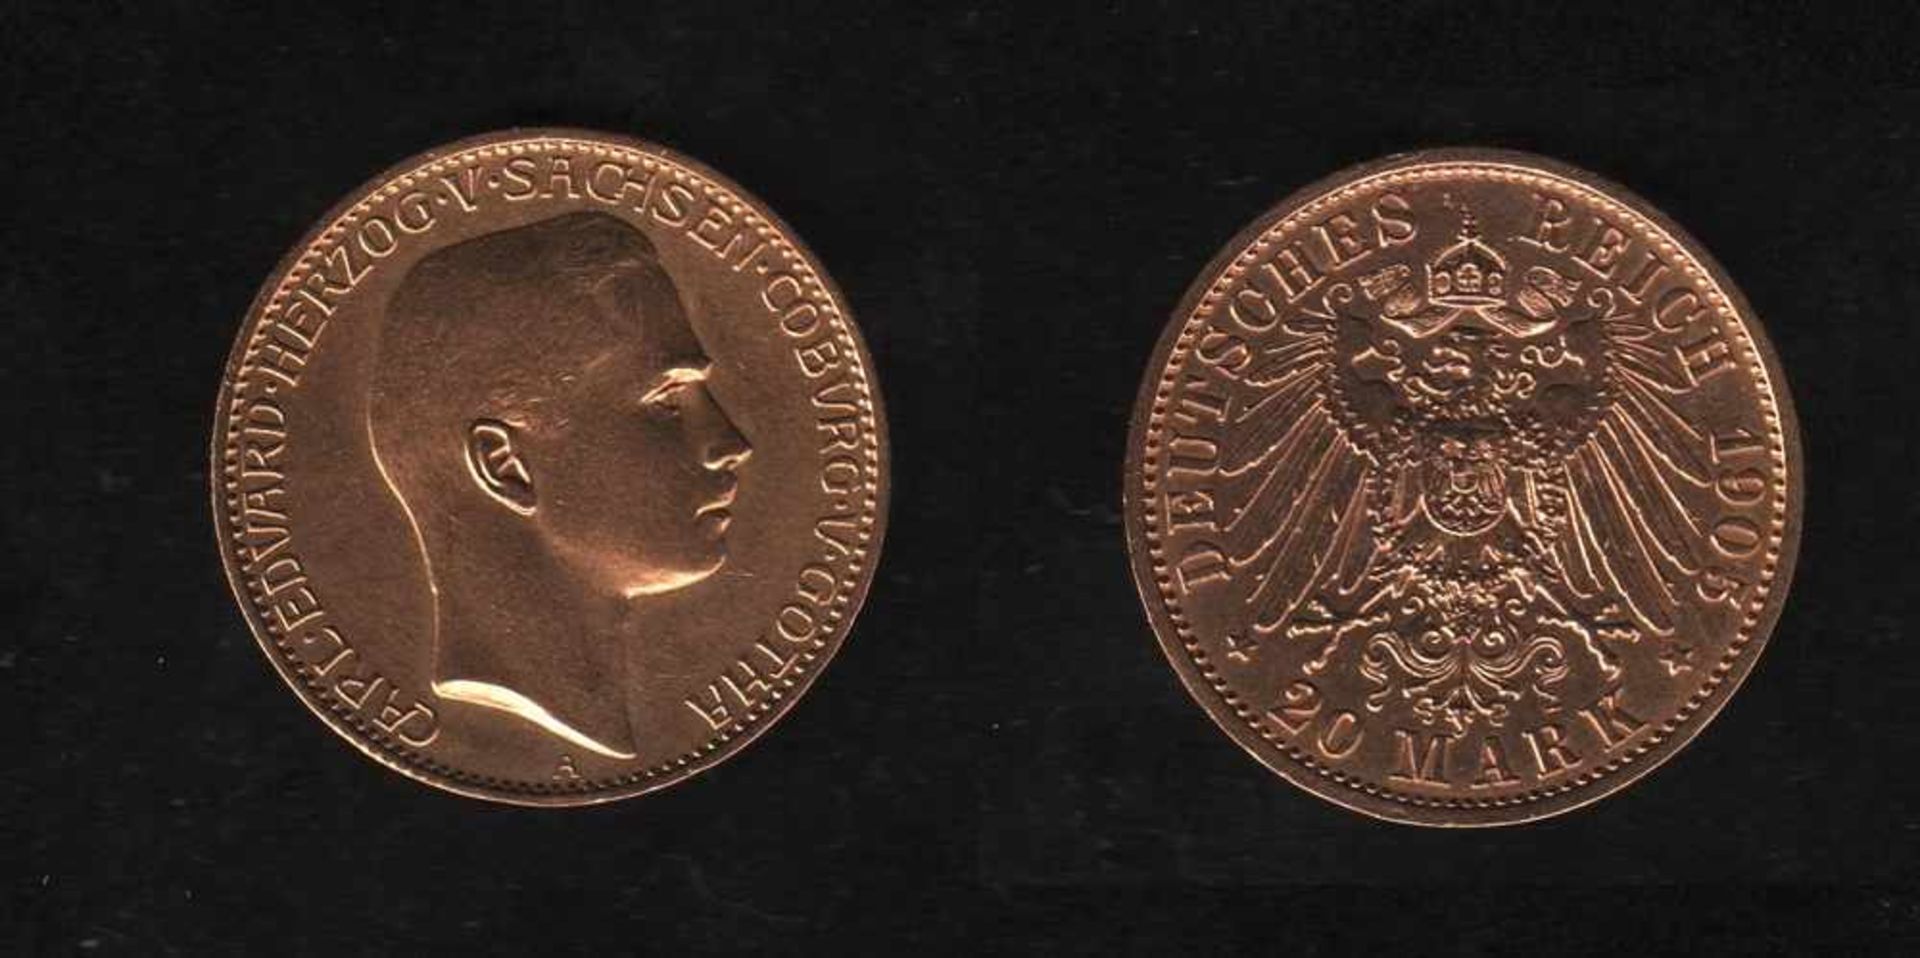 Deutsches Reich. Goldmünze.20 Mark. Carl Eduard, Herzog von Sachsen - Coburg und Gotha. A 1905.